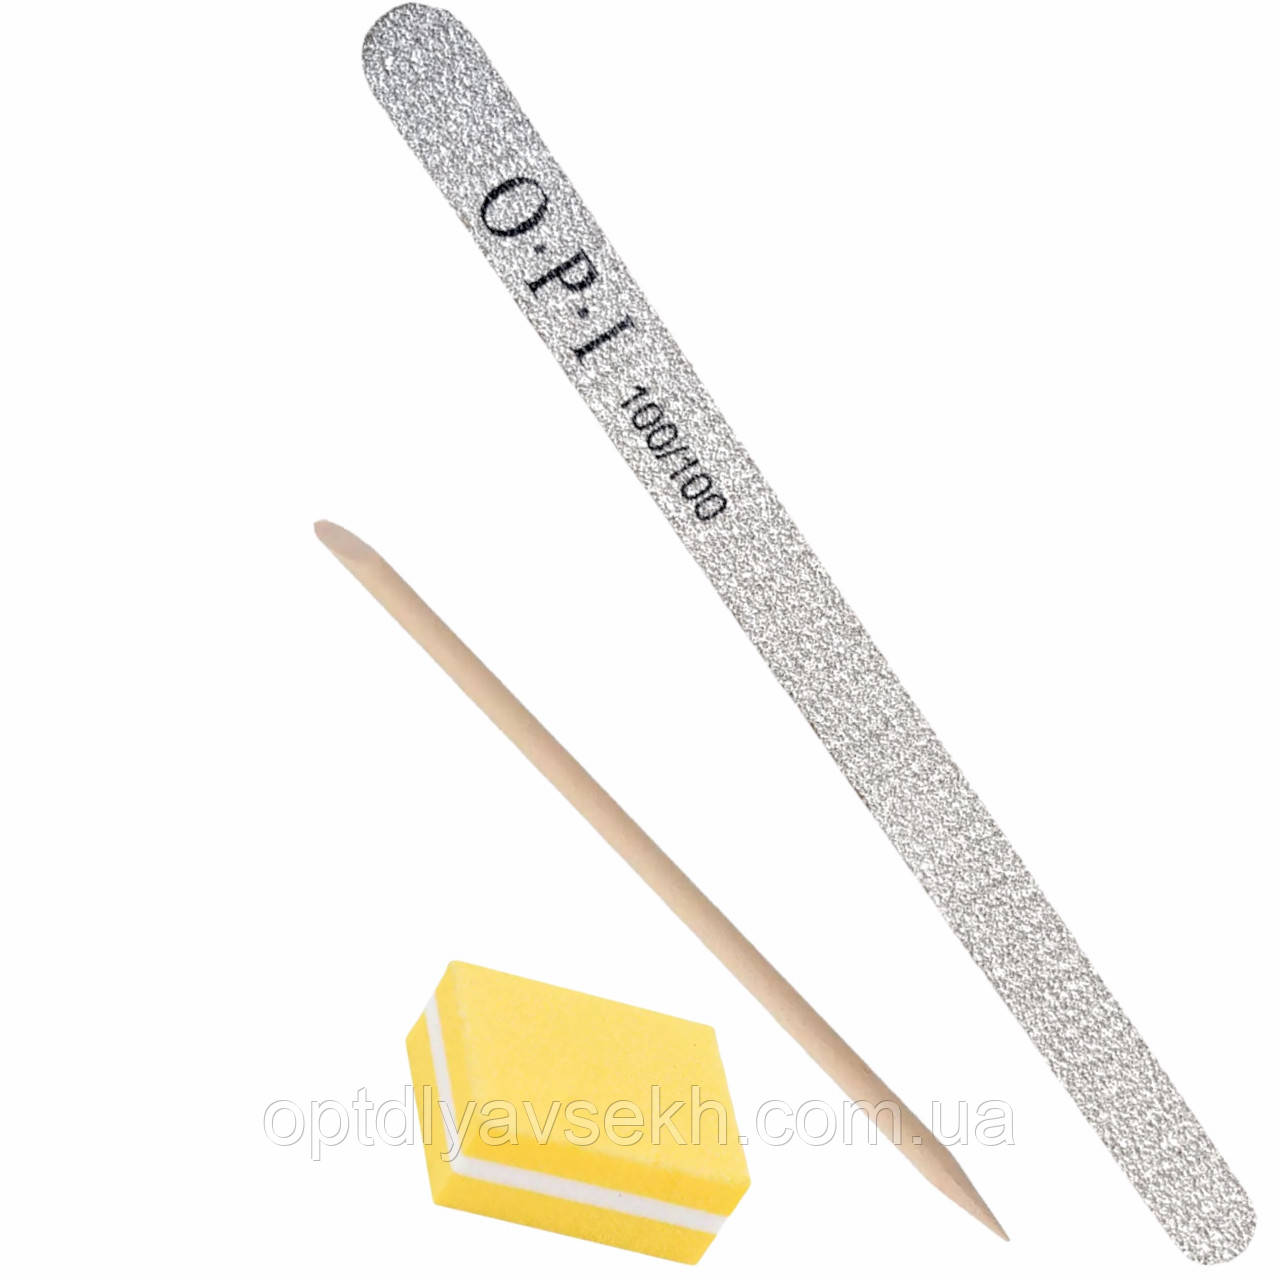 Одноразовий набір для манікюру і педикюру міні-баф + апельсинова паличка 11.5 см. + пилка крапля 100/100